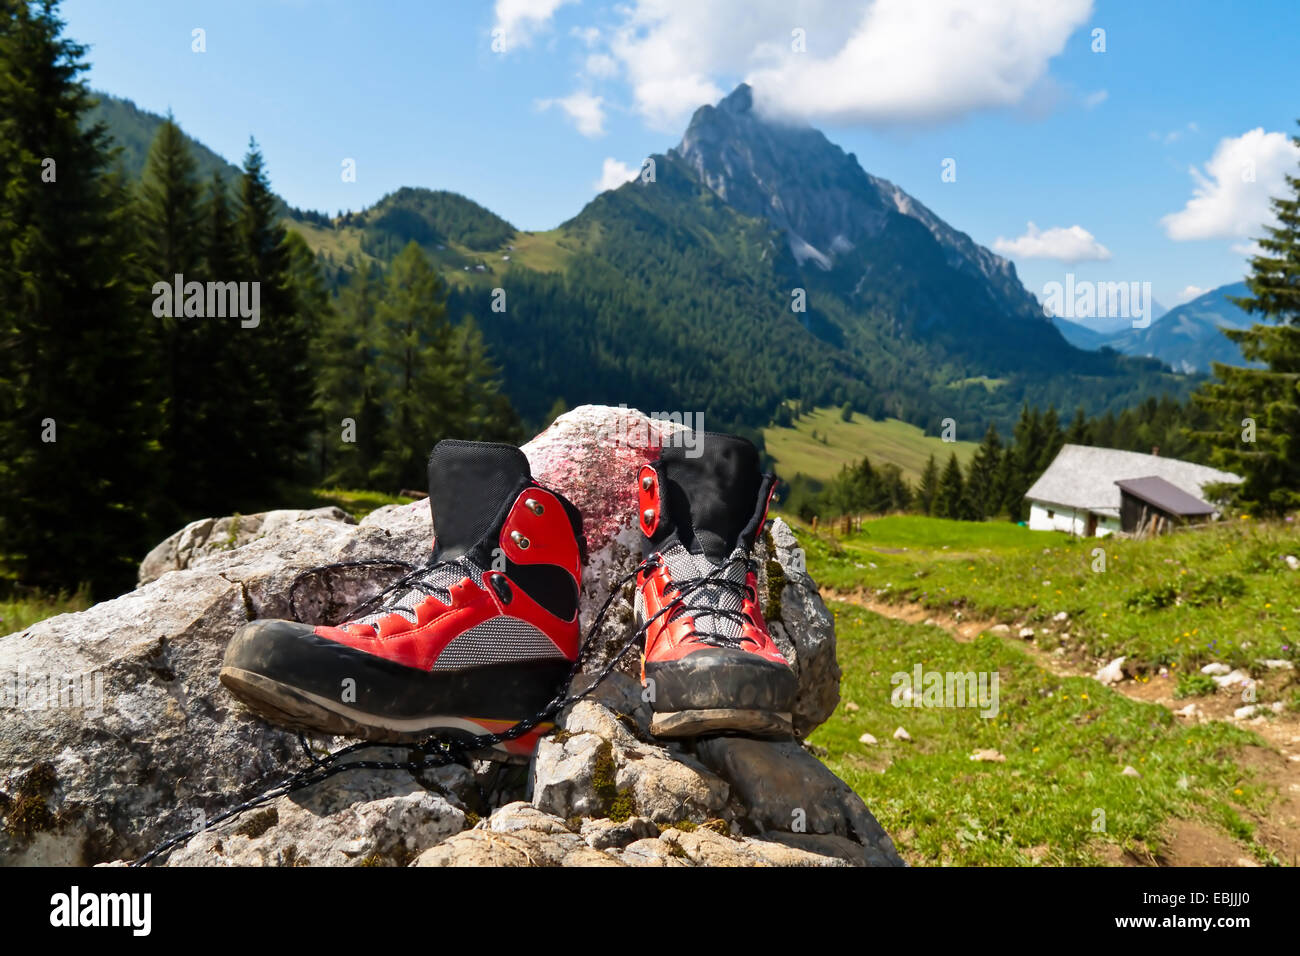 rot Wanderschuhe auf einer Wanderung in den Bergen, Österreich  Stockfotografie - Alamy